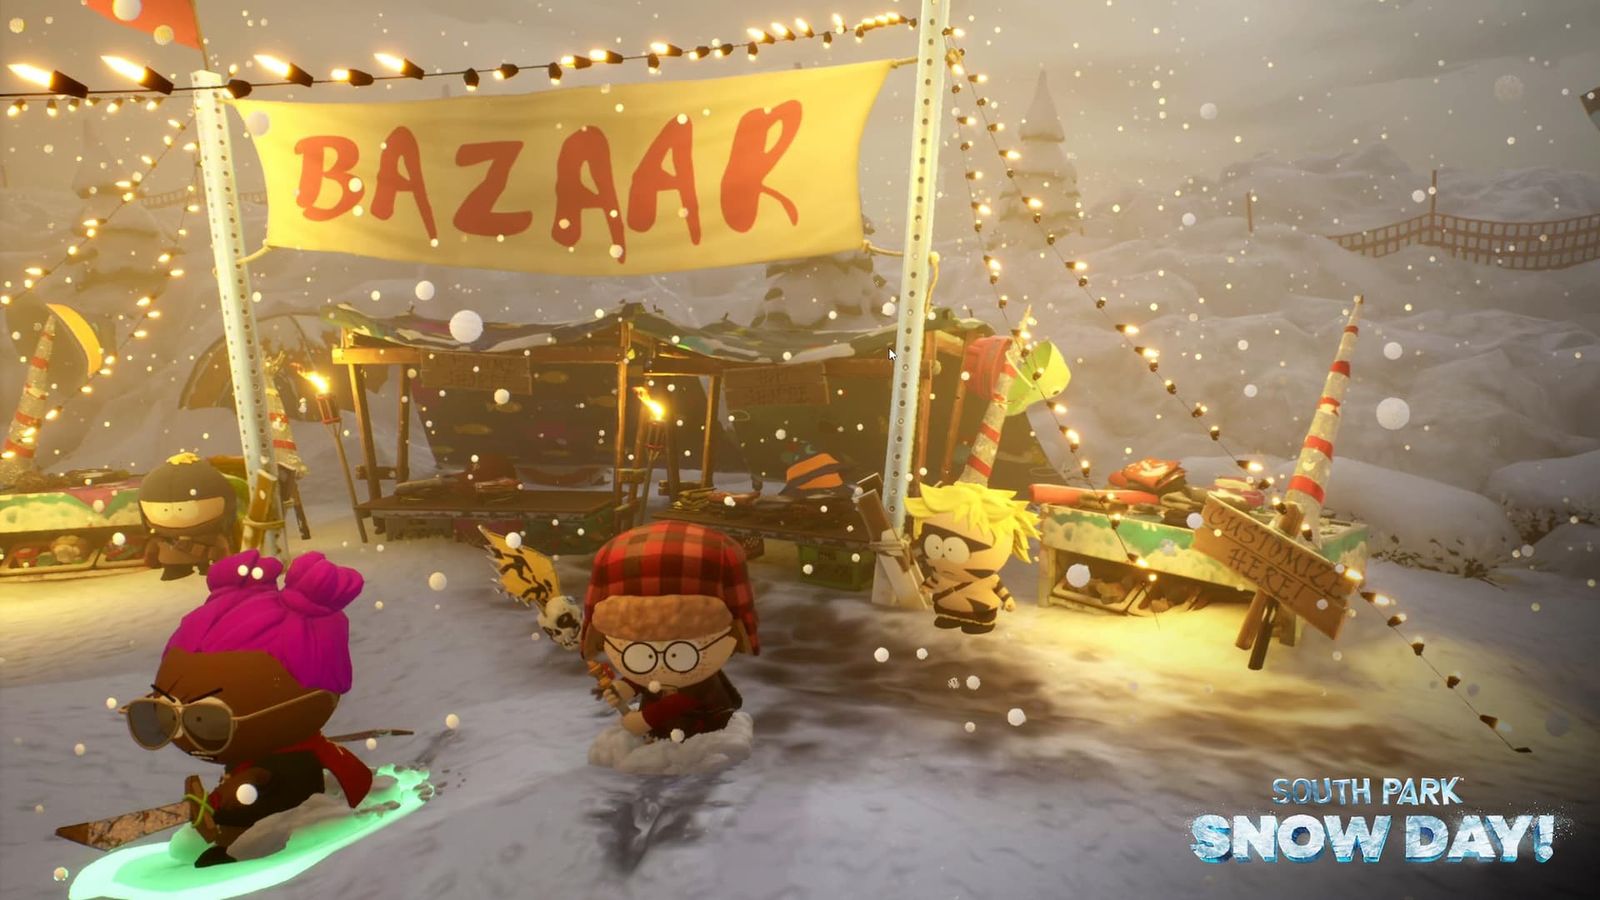 South Park Snow Day characters near Bazaar area